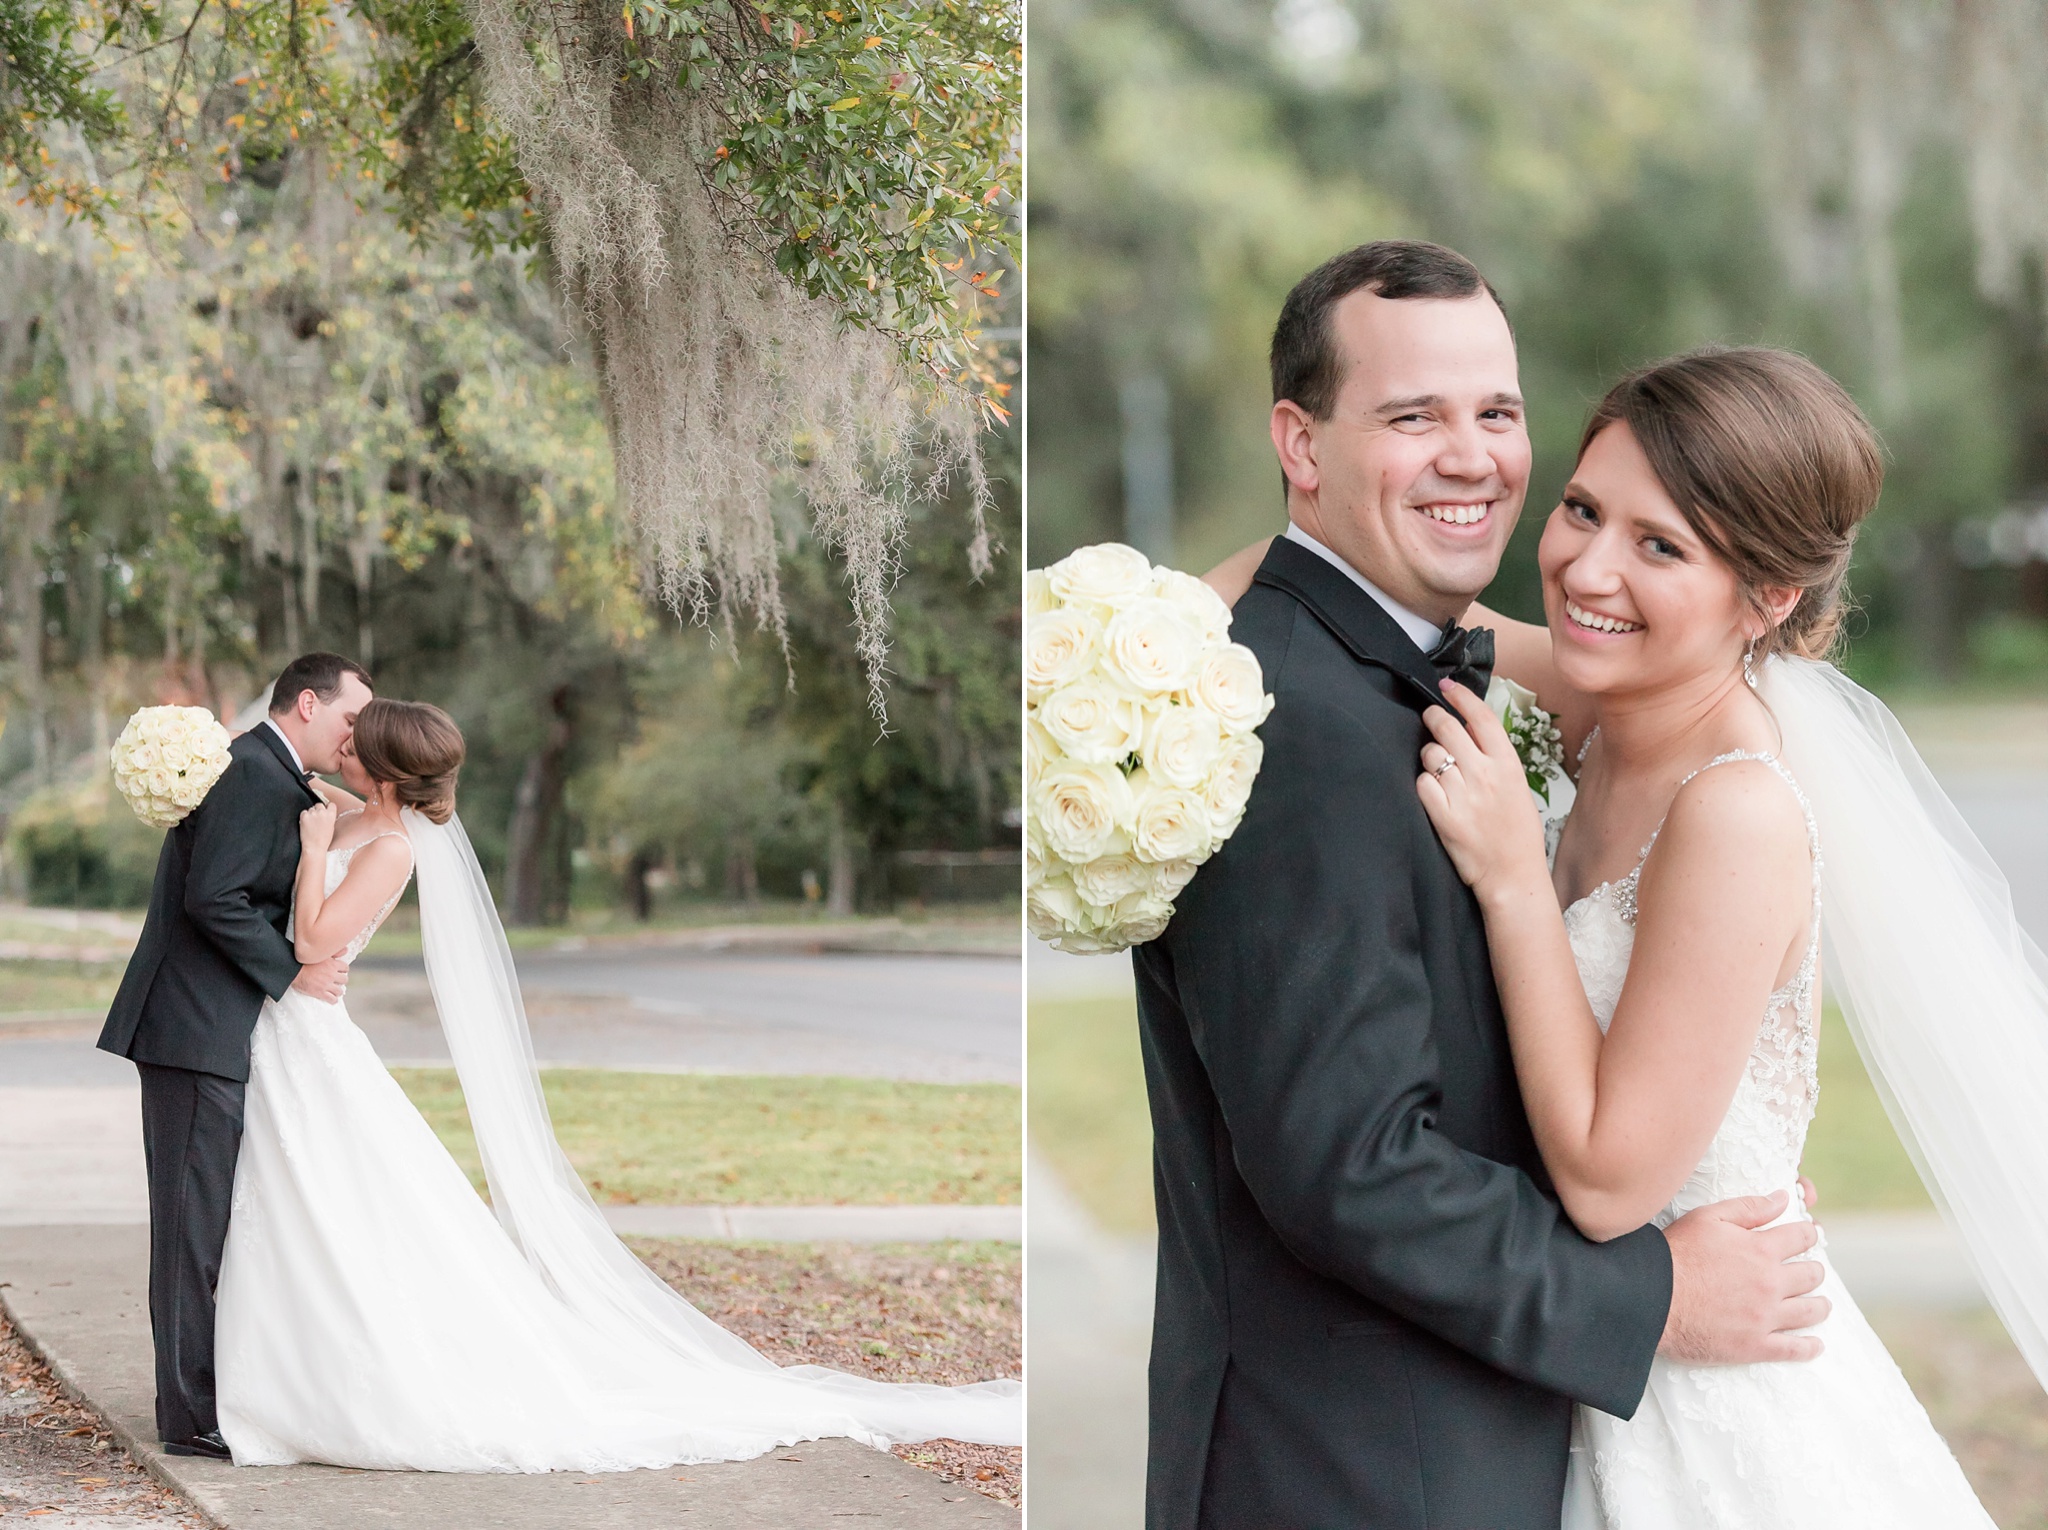 Niceville Destin Florida Wedding | Birmingham Alabama Wedding Photographers_0037.jpg